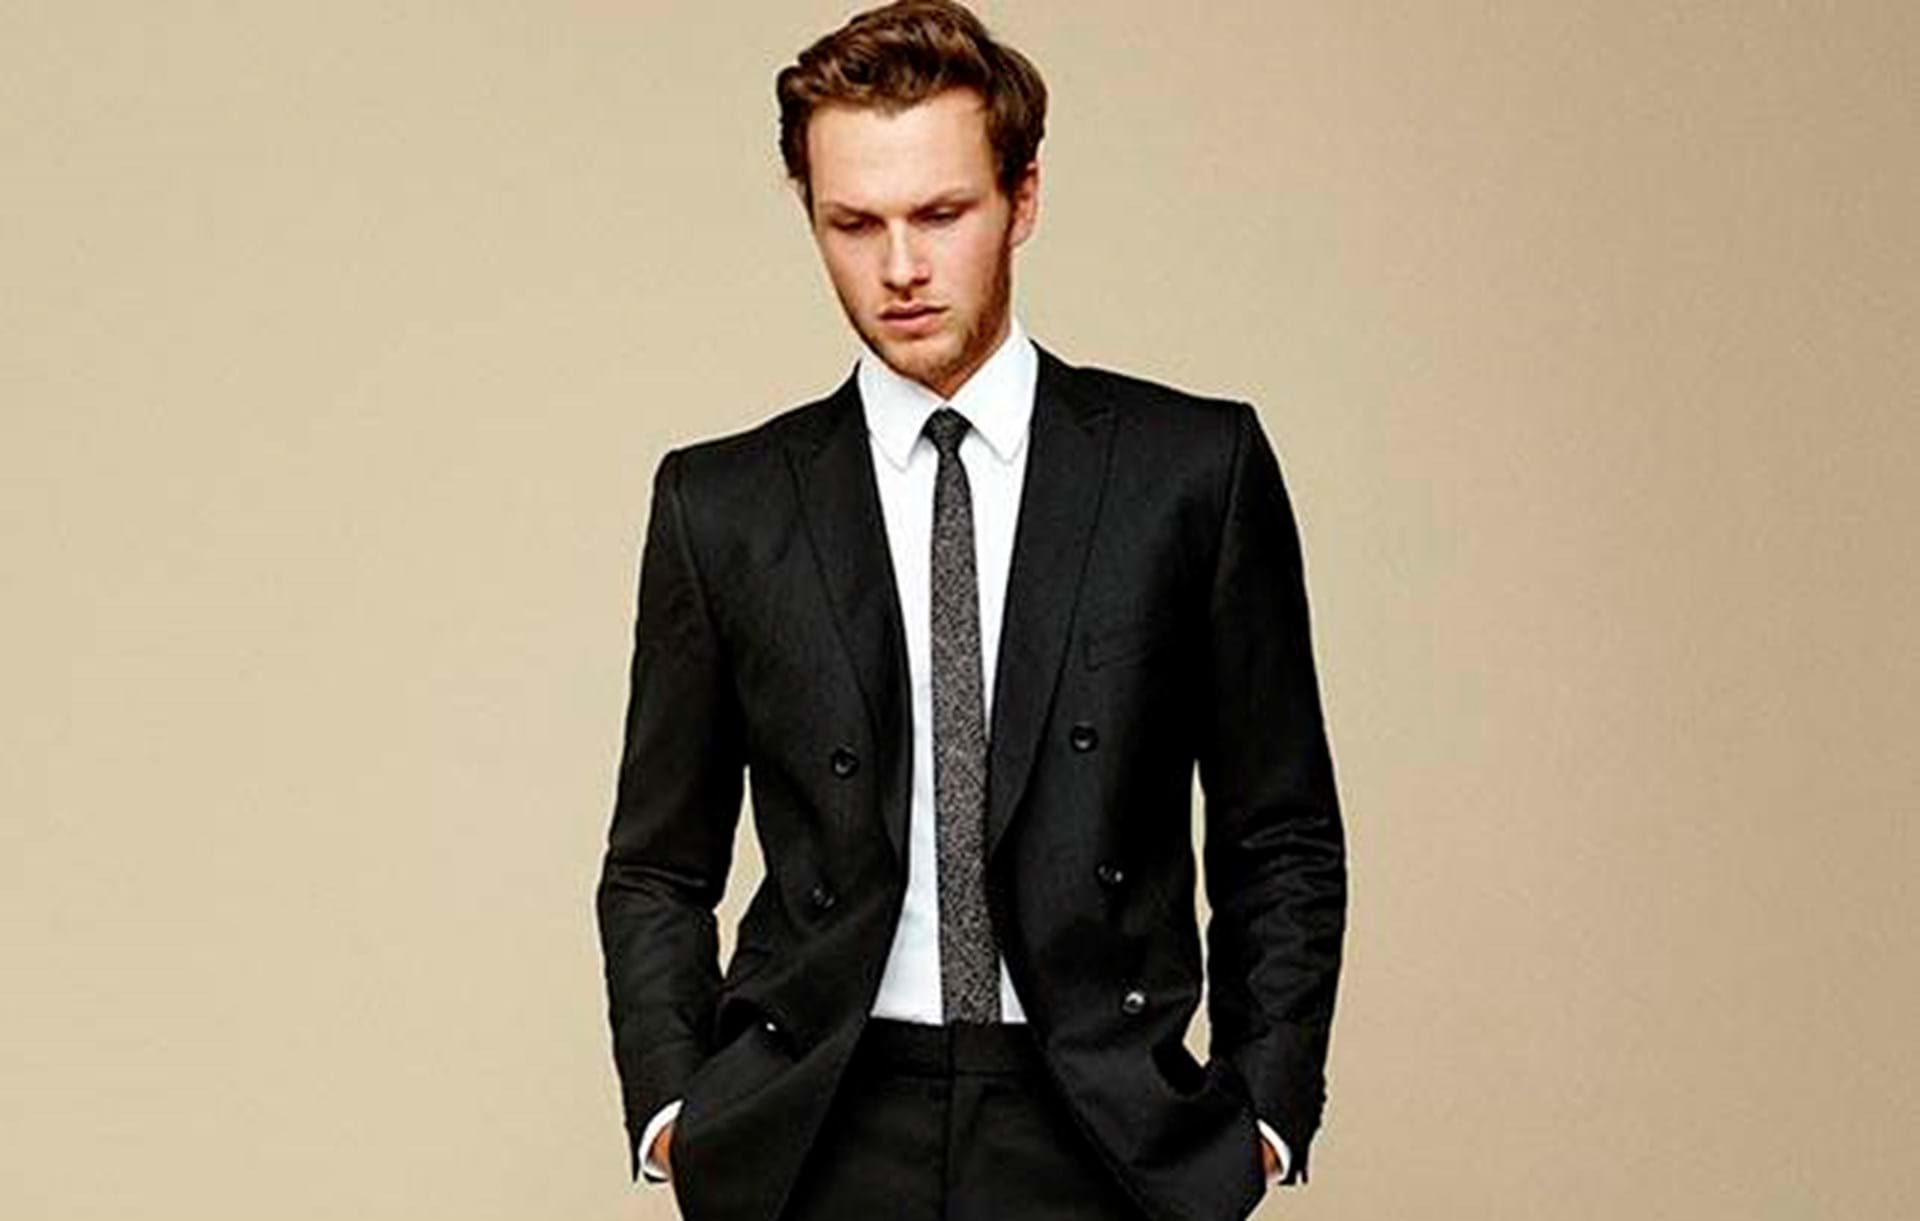 Plaske gruppe offentliggøre Sådan finder du det perfekte jakkesæt til mænd - Euroman